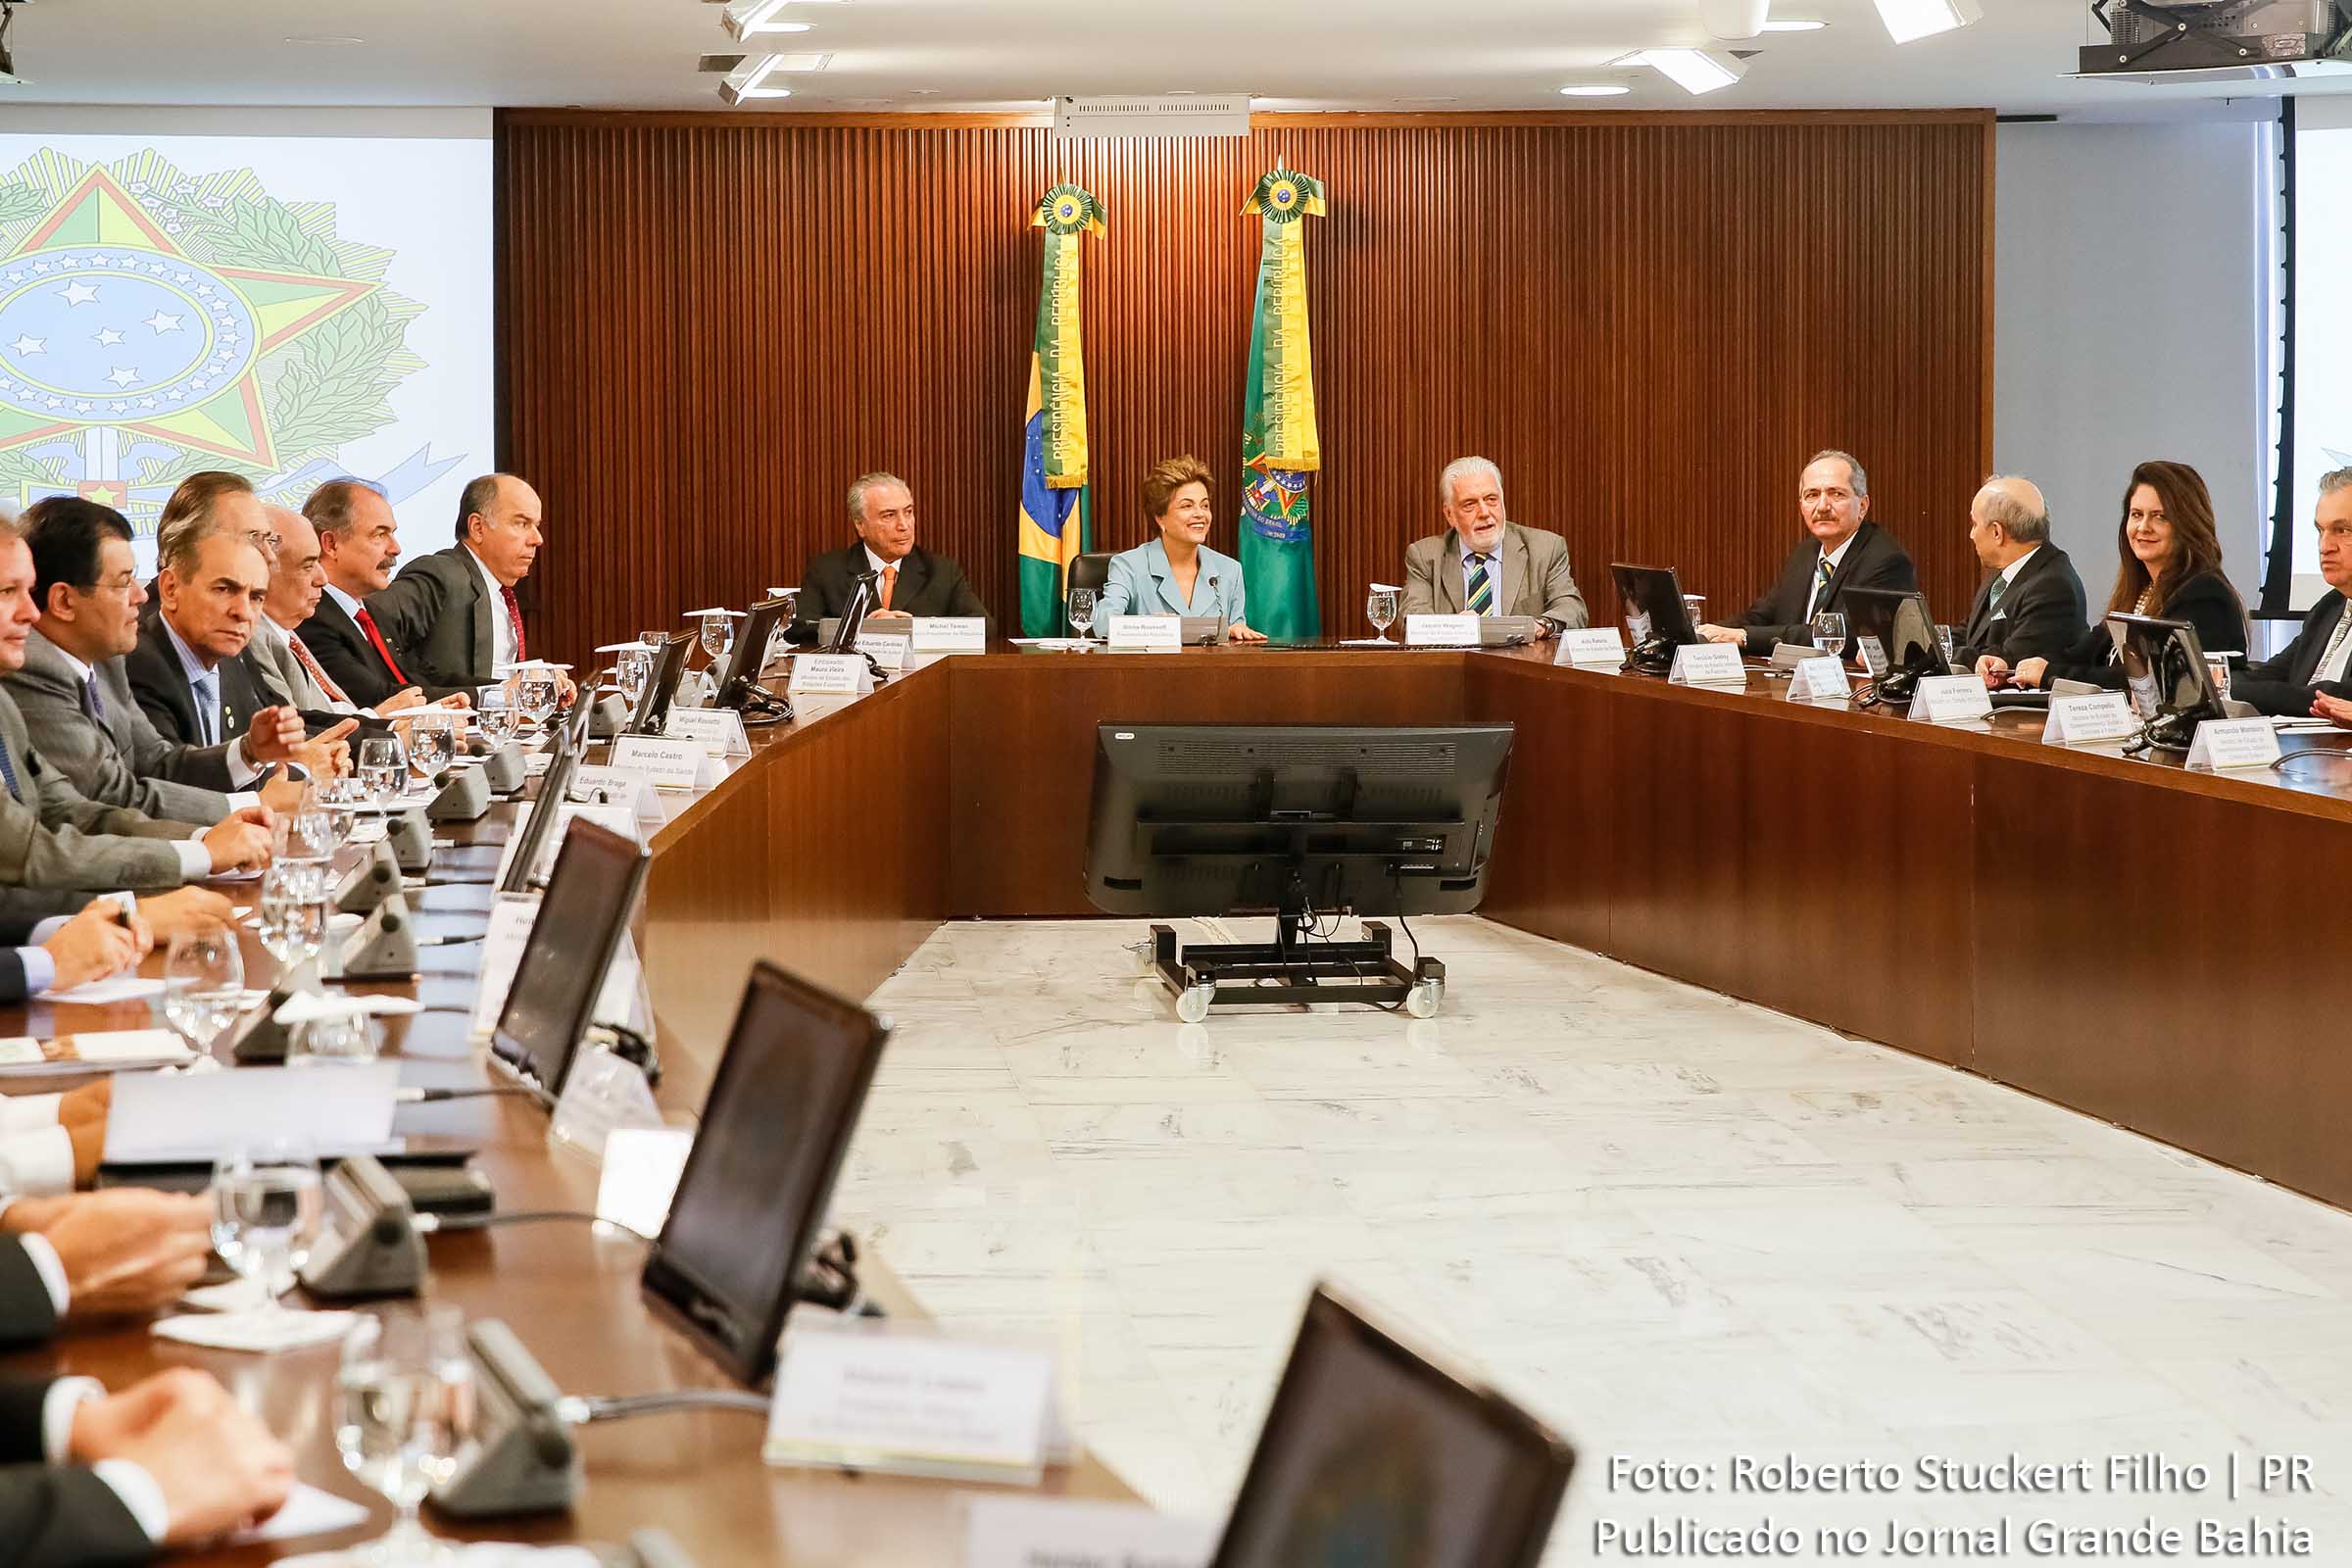 Presidente Dilma Rousseff e ministros. Crise política no centro das discussões.